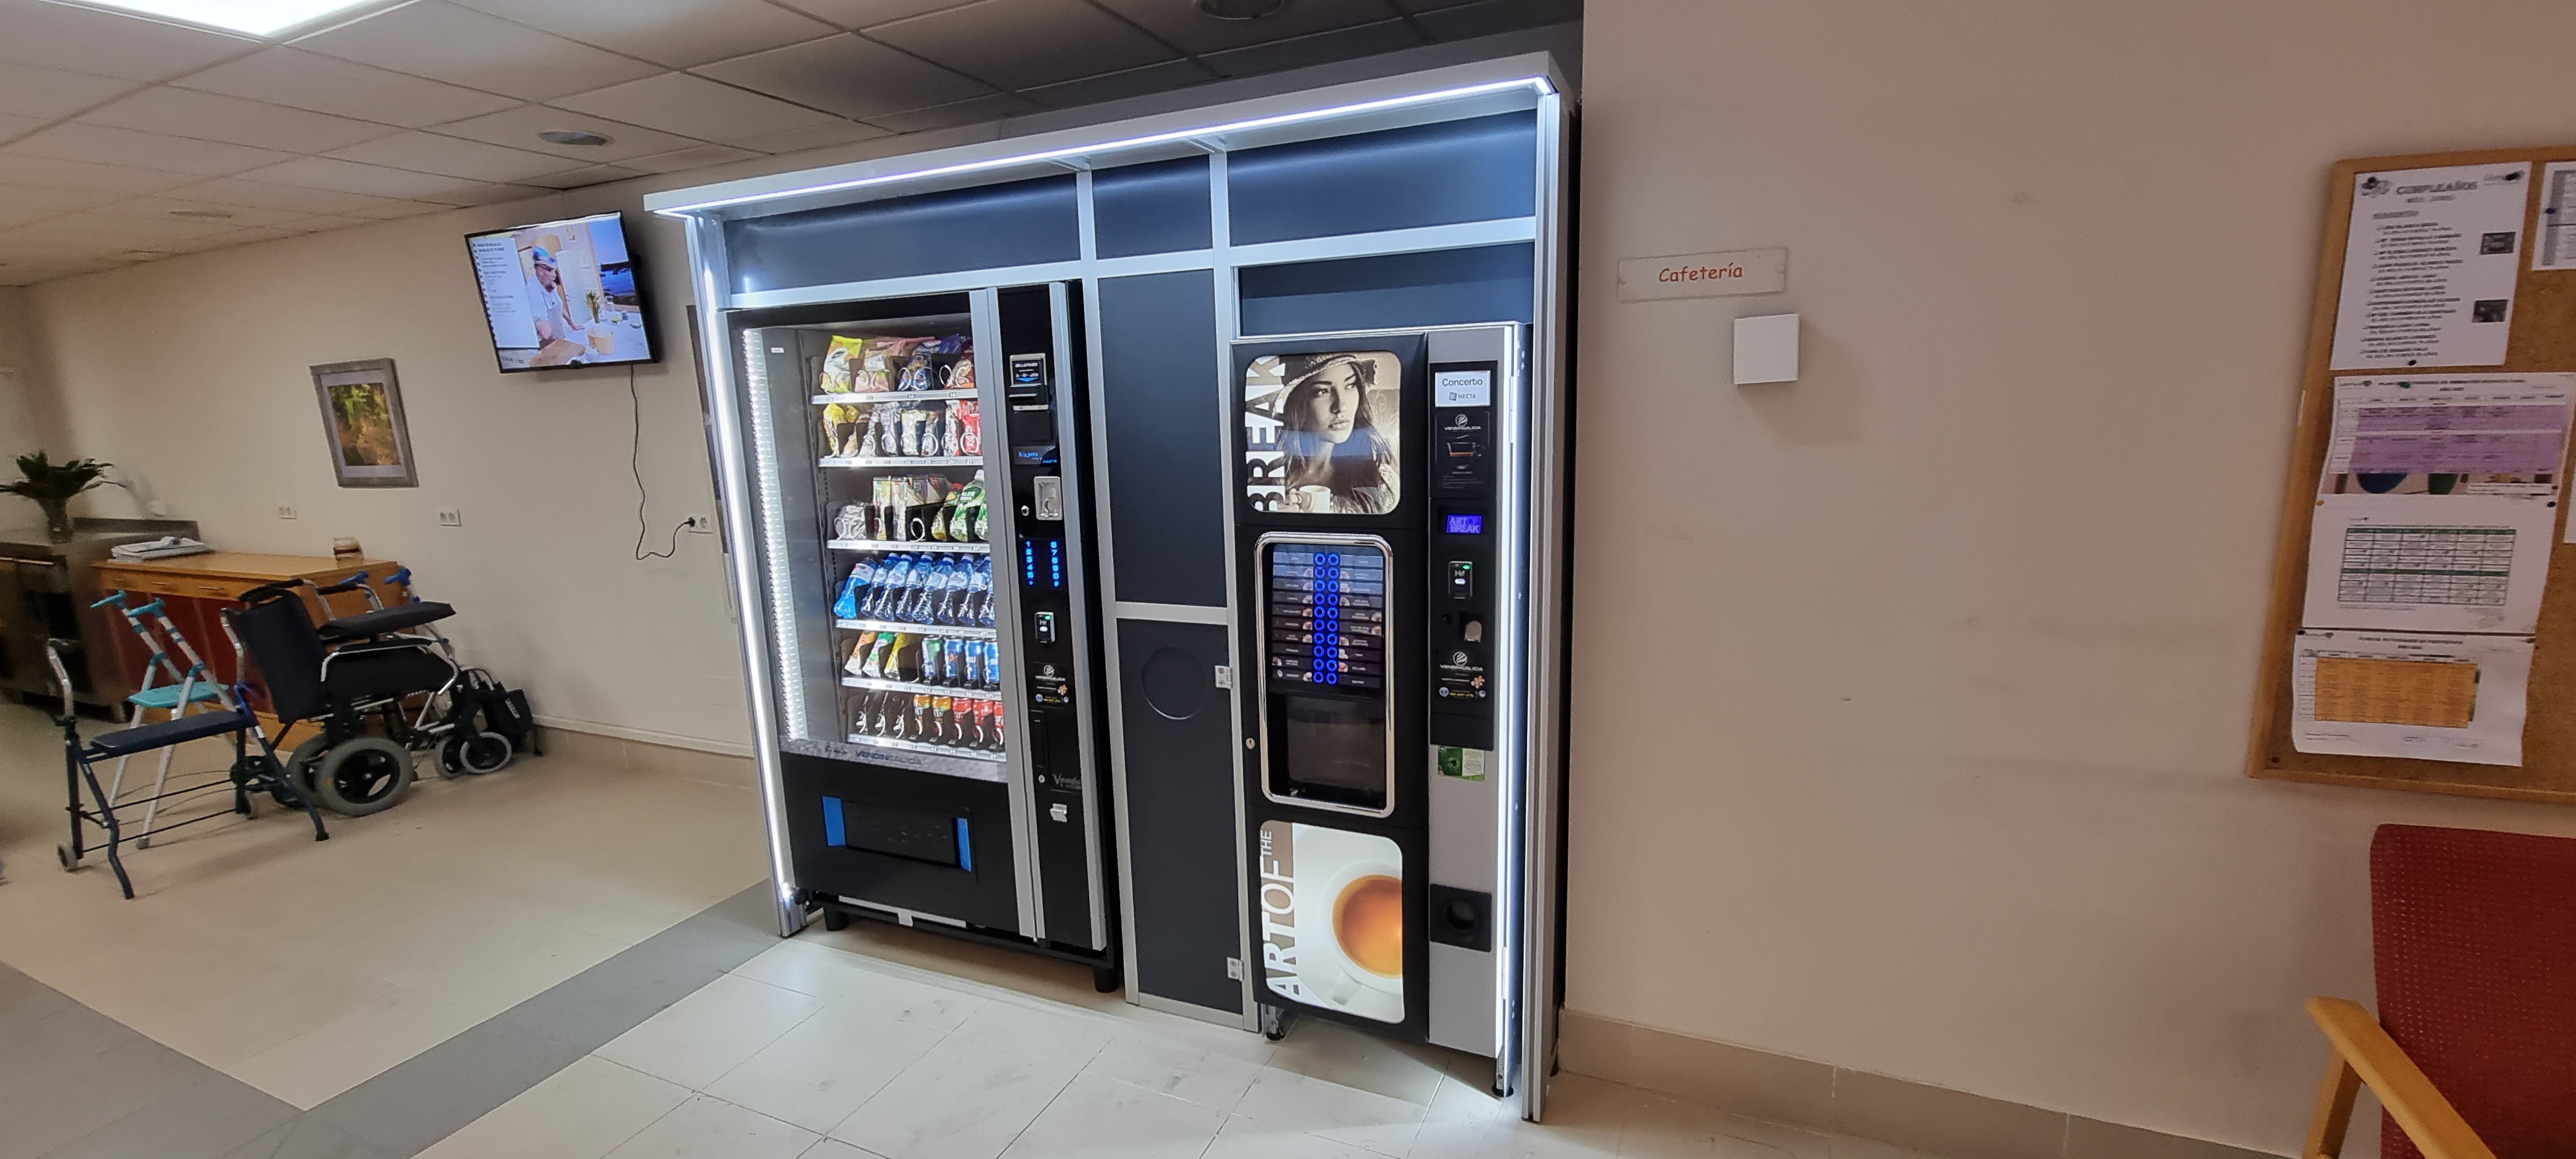 Máquinas expendedoras con snacks saludables en Galicia